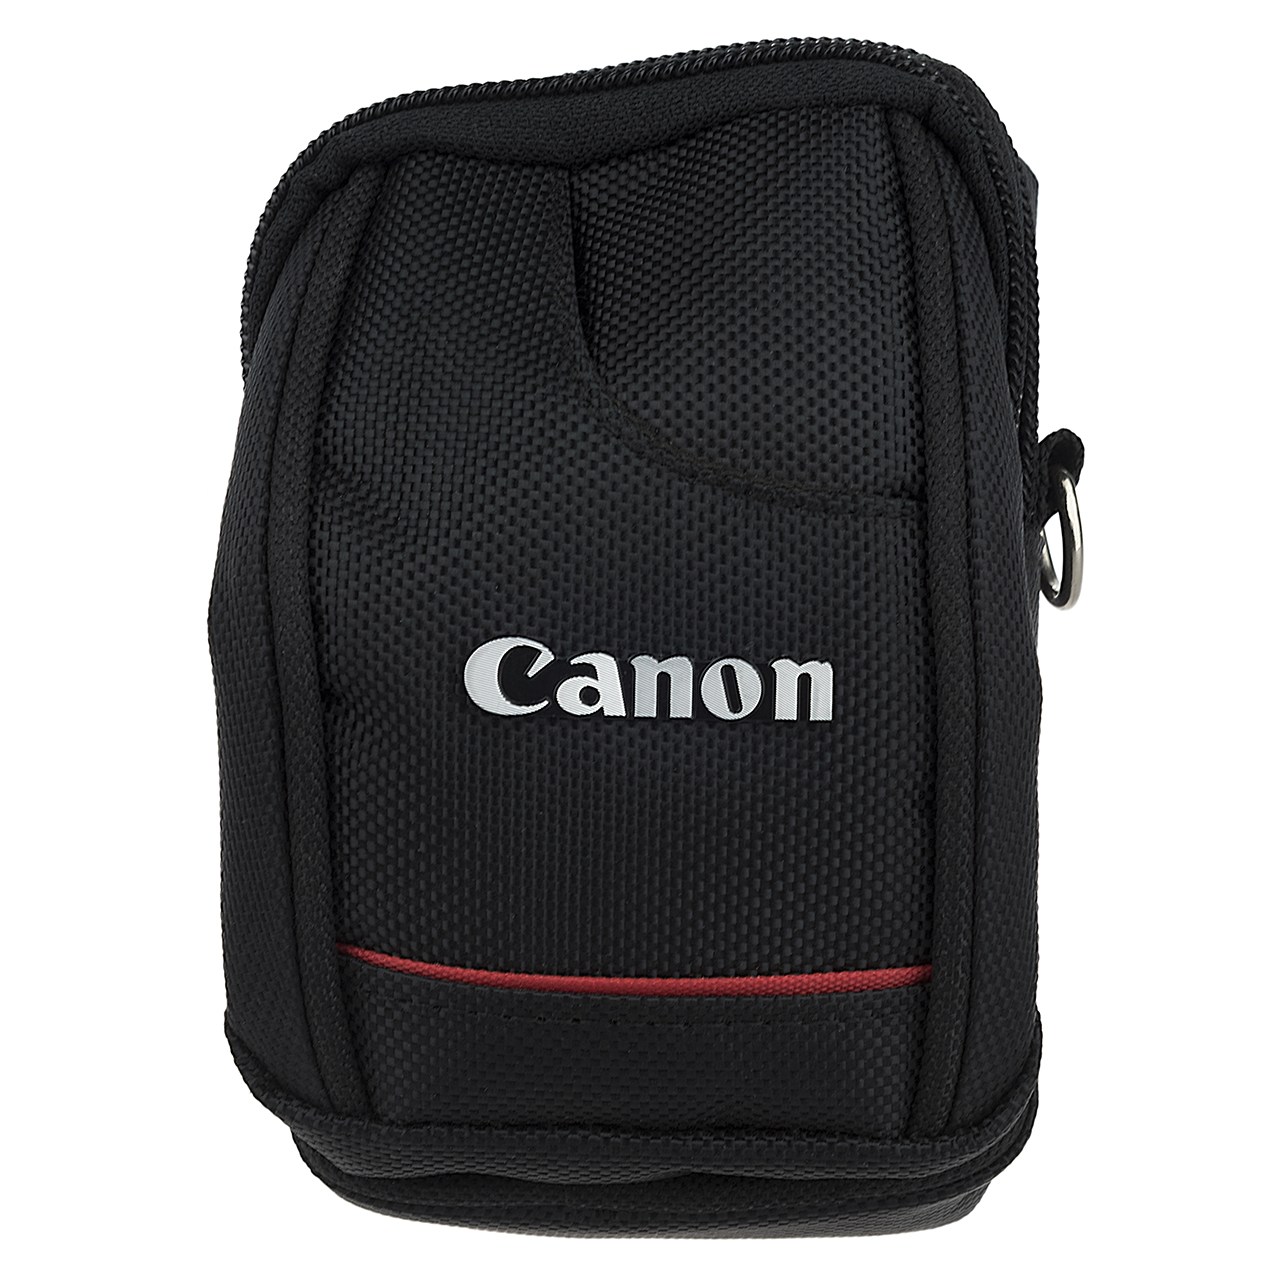 کیف دوربین کامپکت مدل Canon 1